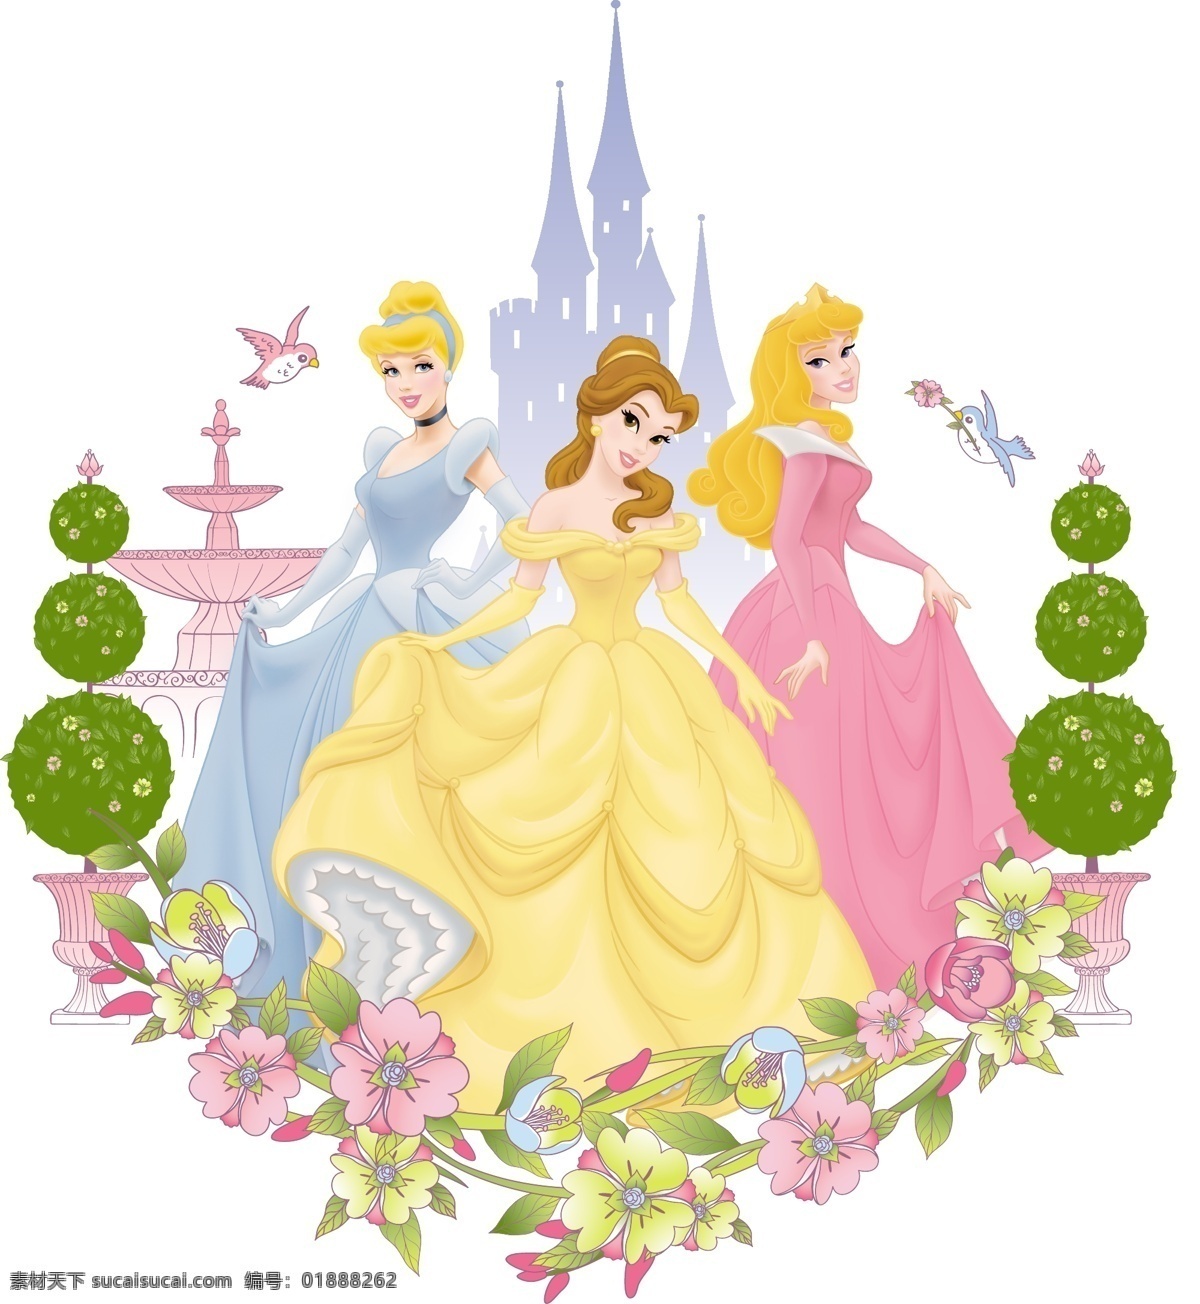 t恤印花 白雪公主 城堡 迪士尼 动画 服装 公主 花朵 印花 女装 童装 卡通 童话 美女 少女 女孩 灰姑娘 睡美人 卡通设计 矢量